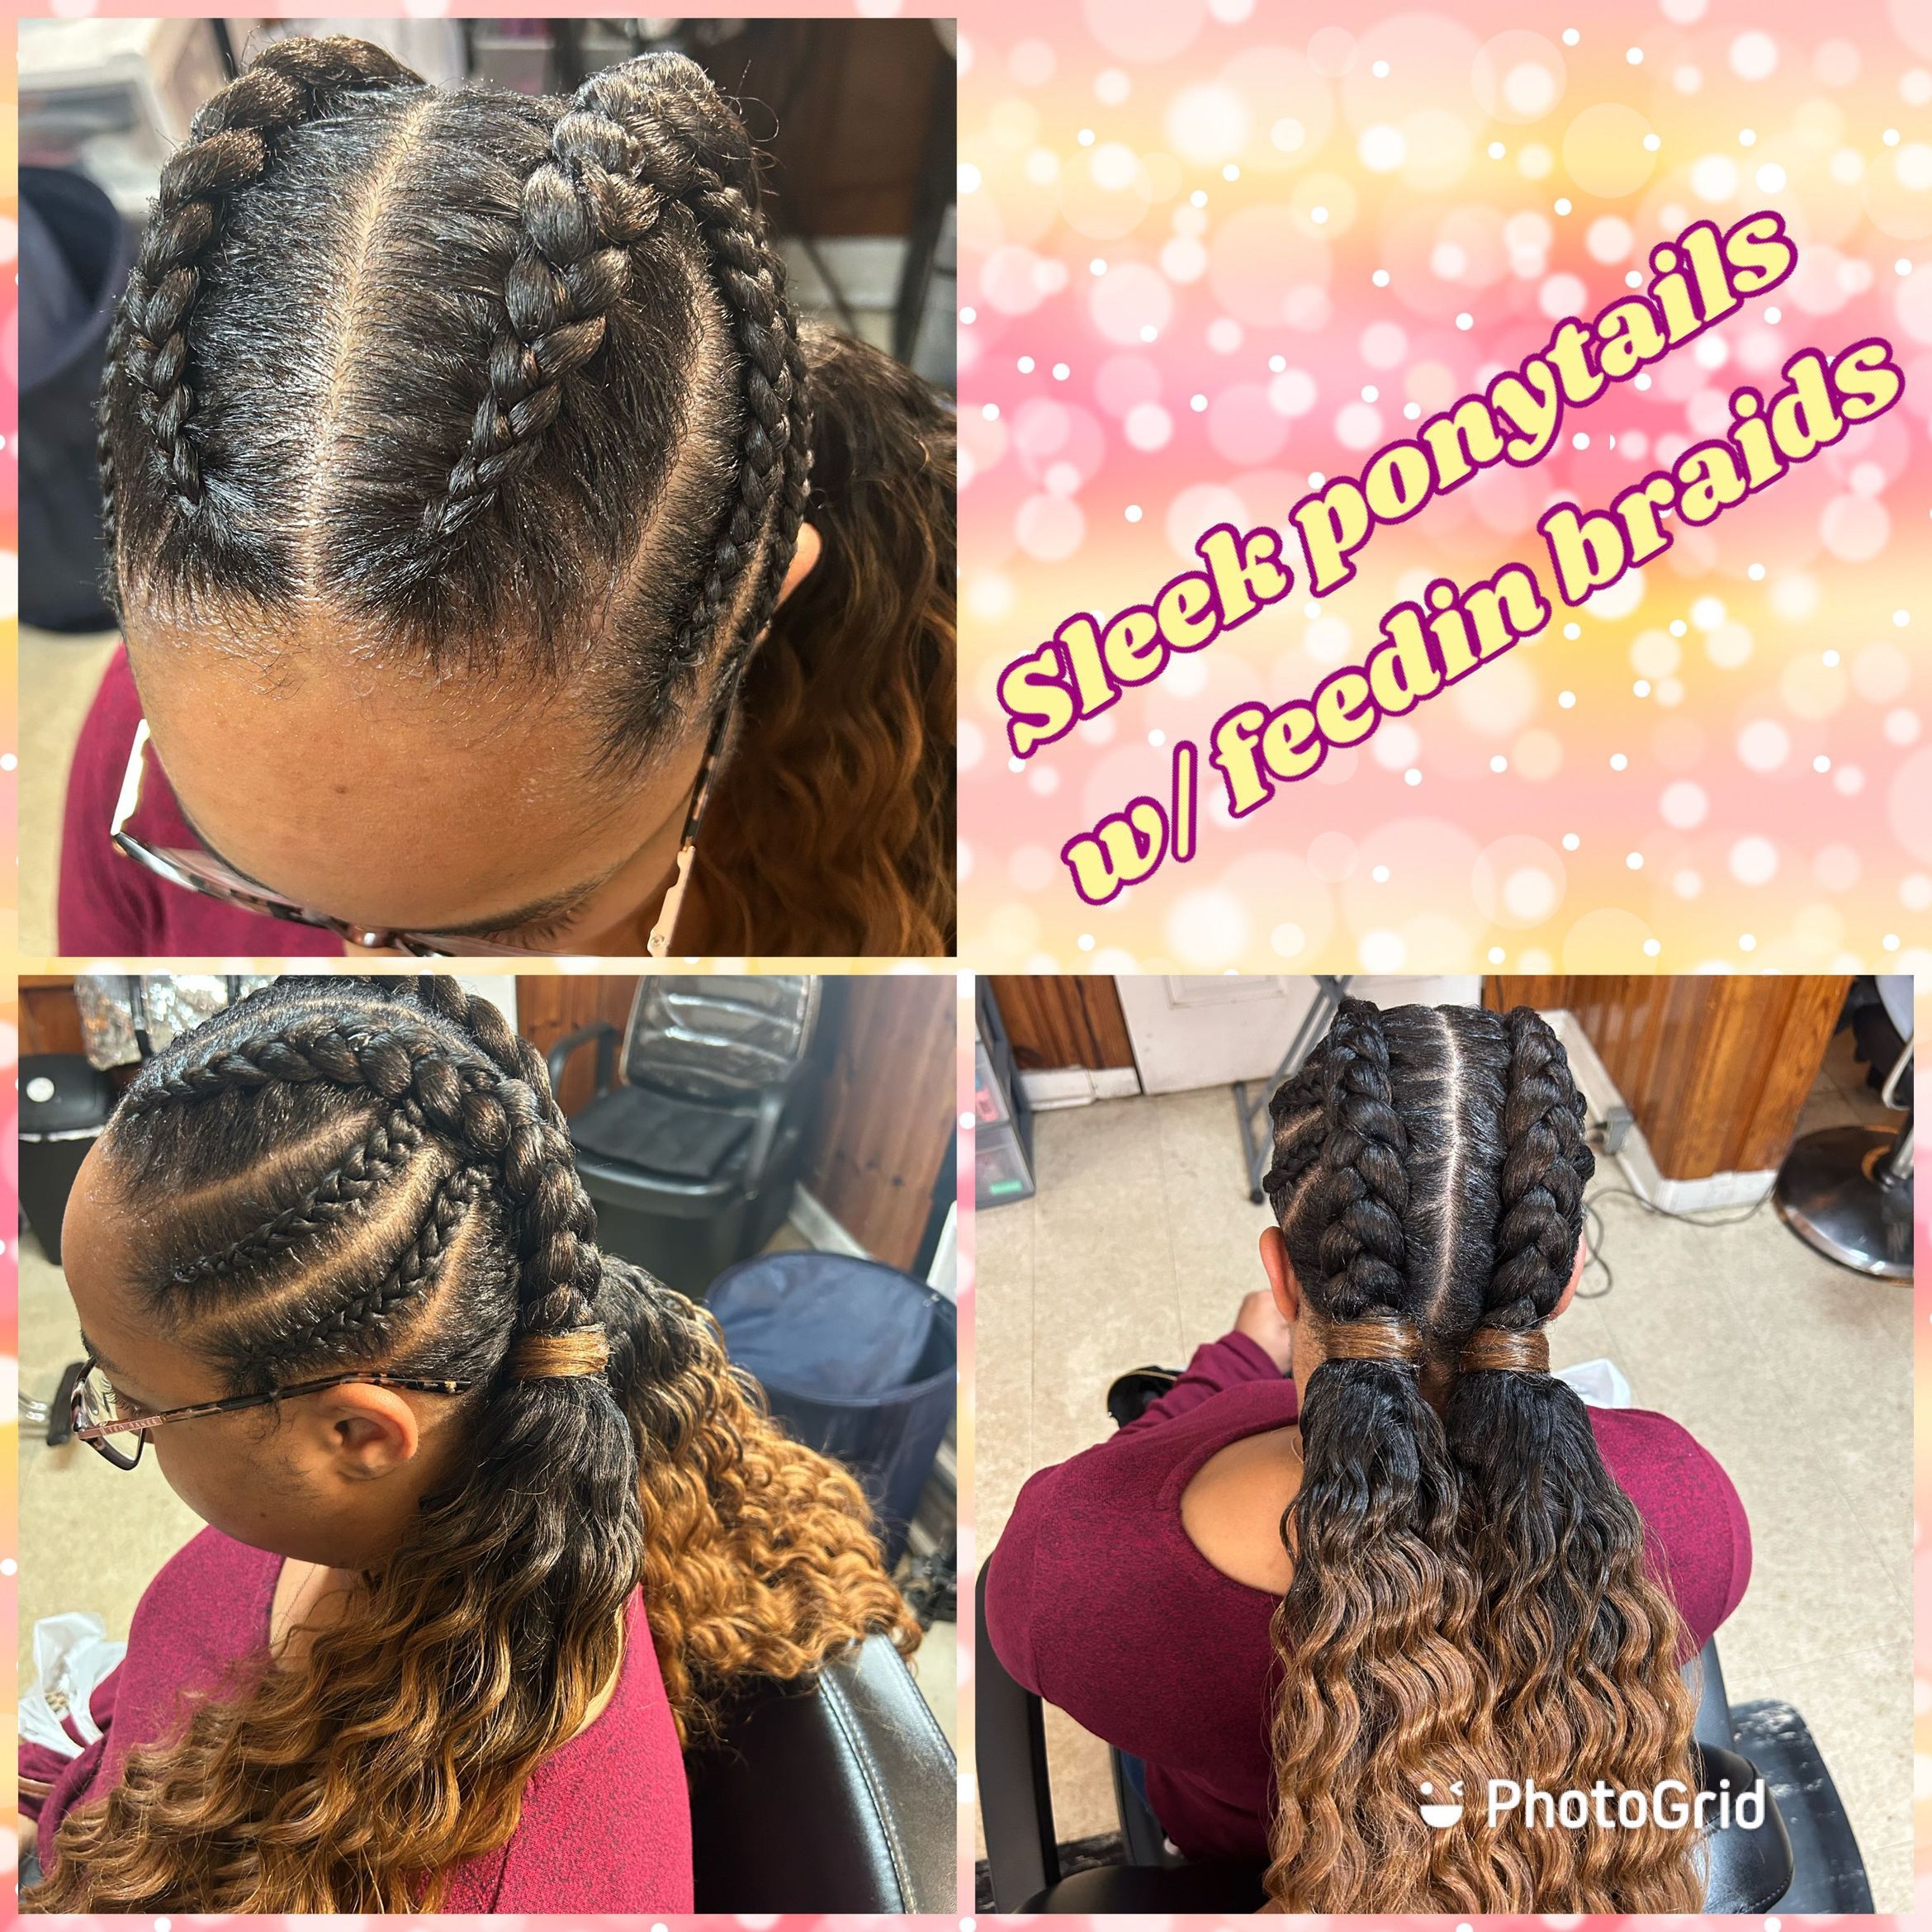 Feedin braids w/ sleek ponytails portfolio